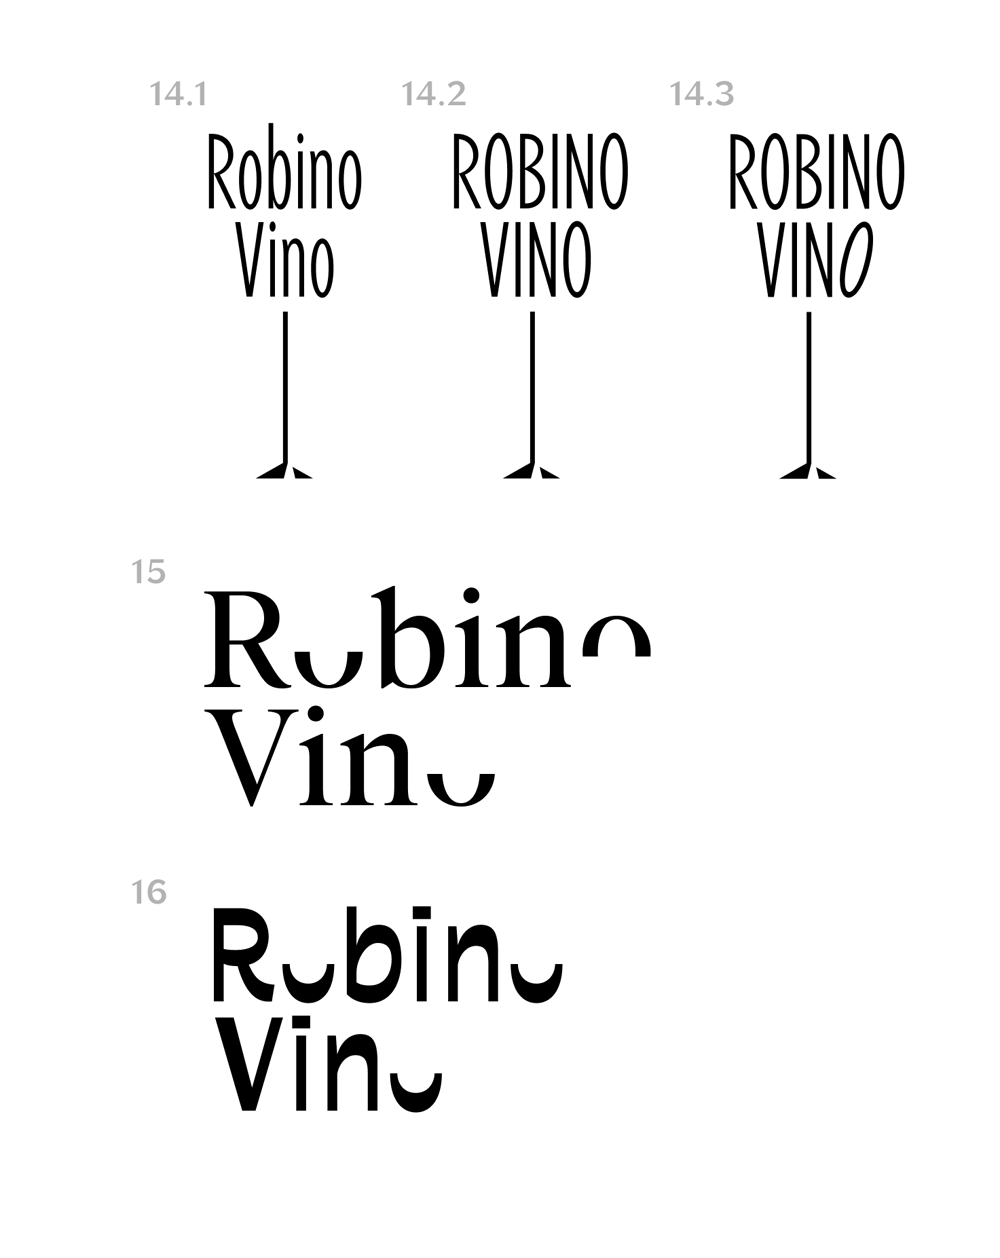 robinovino process 04